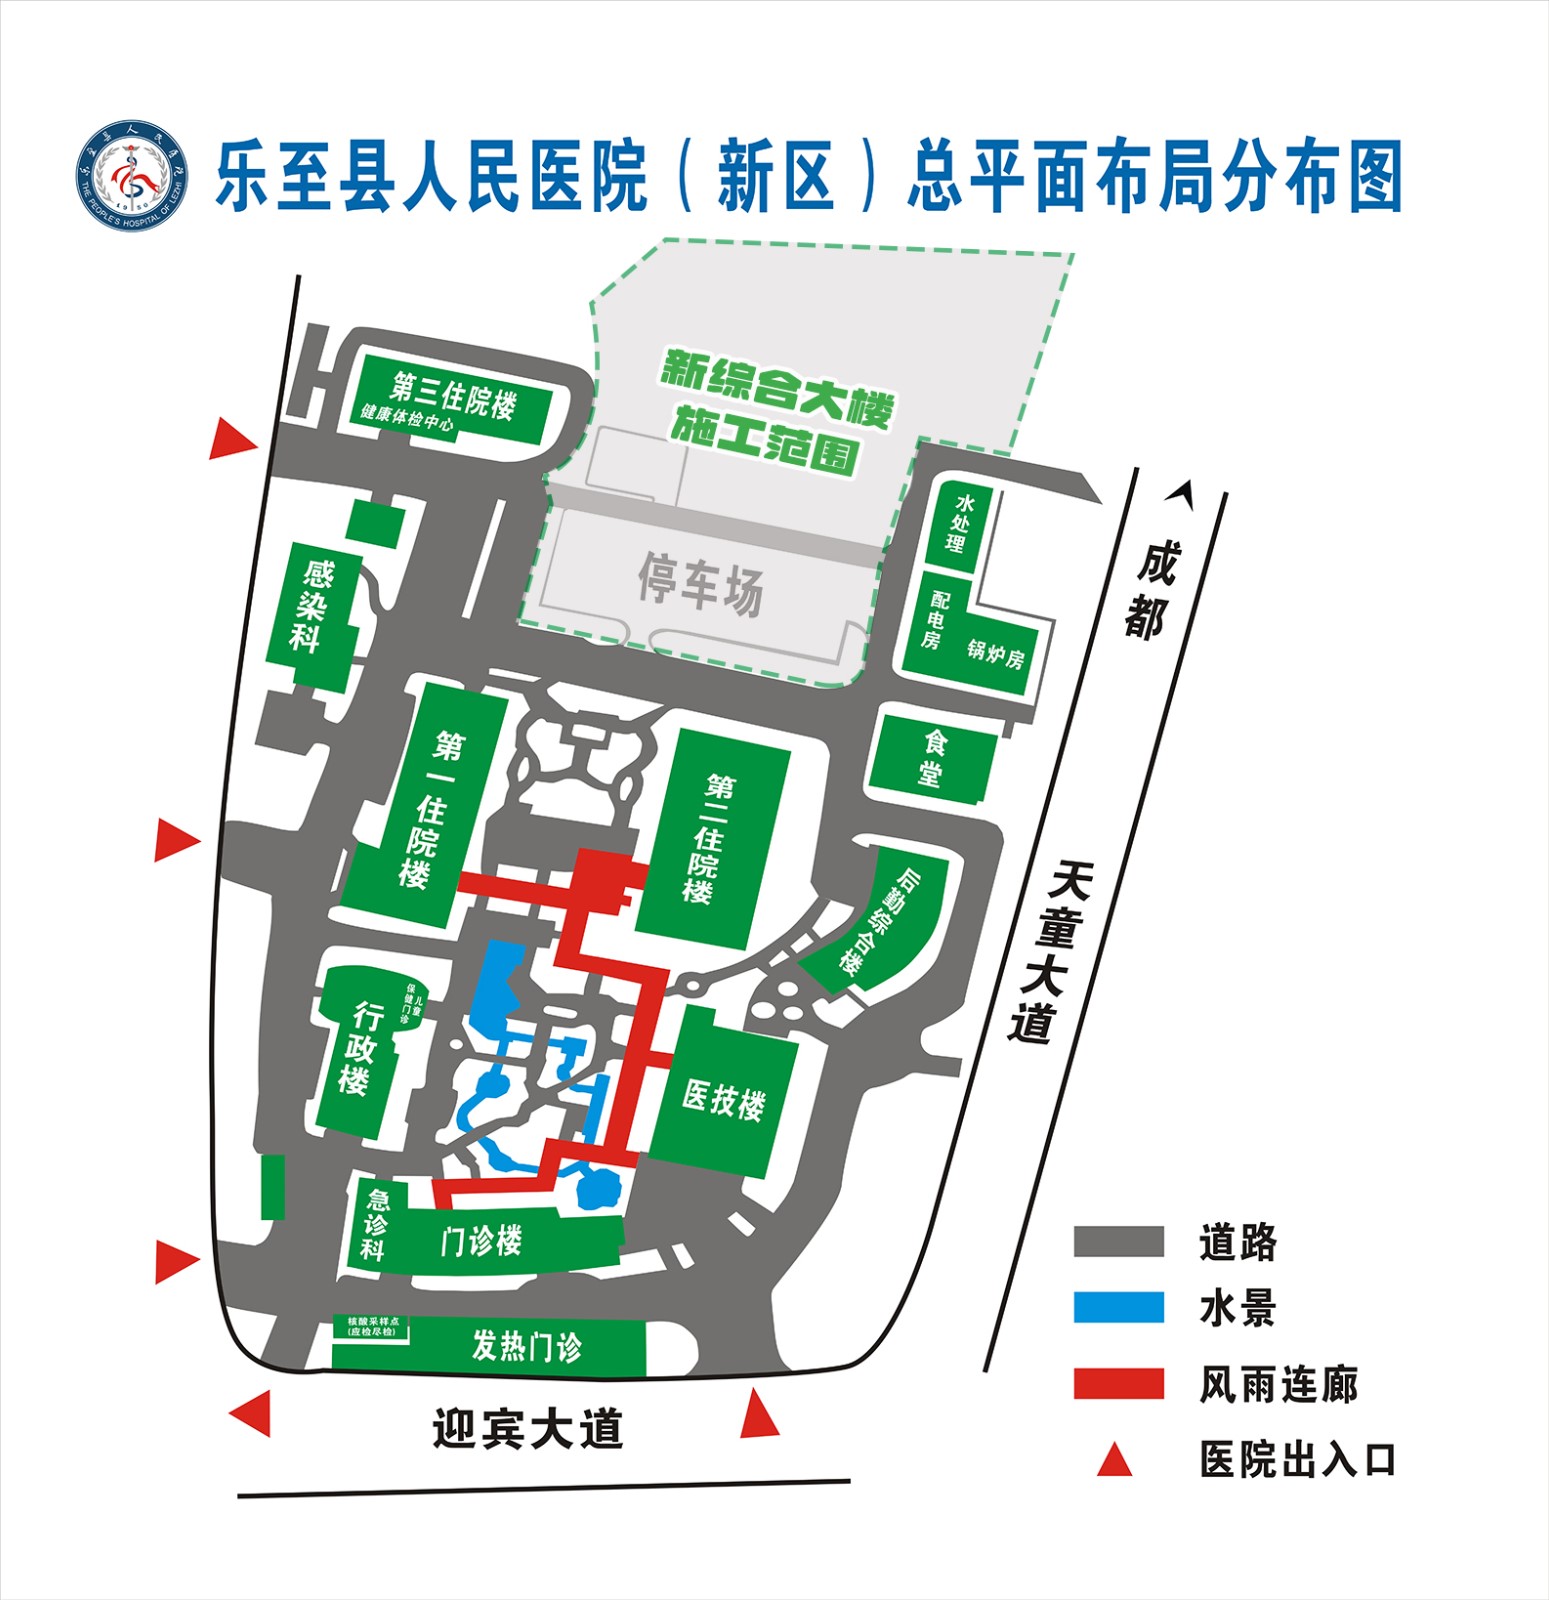 乐至县人民医院(新区)总平面布局分布图.jpg